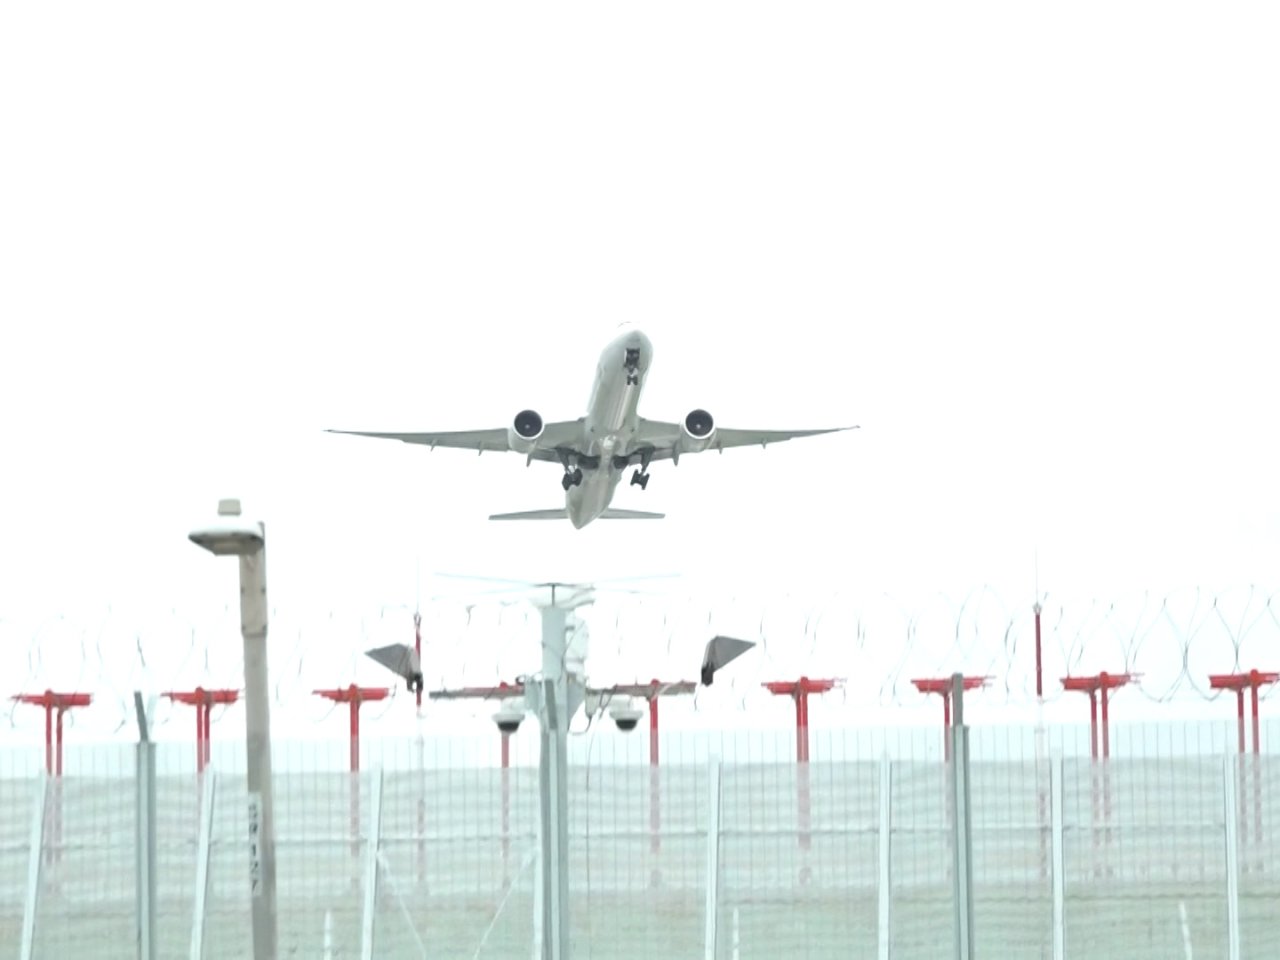 Flights resume as airport runway reopens